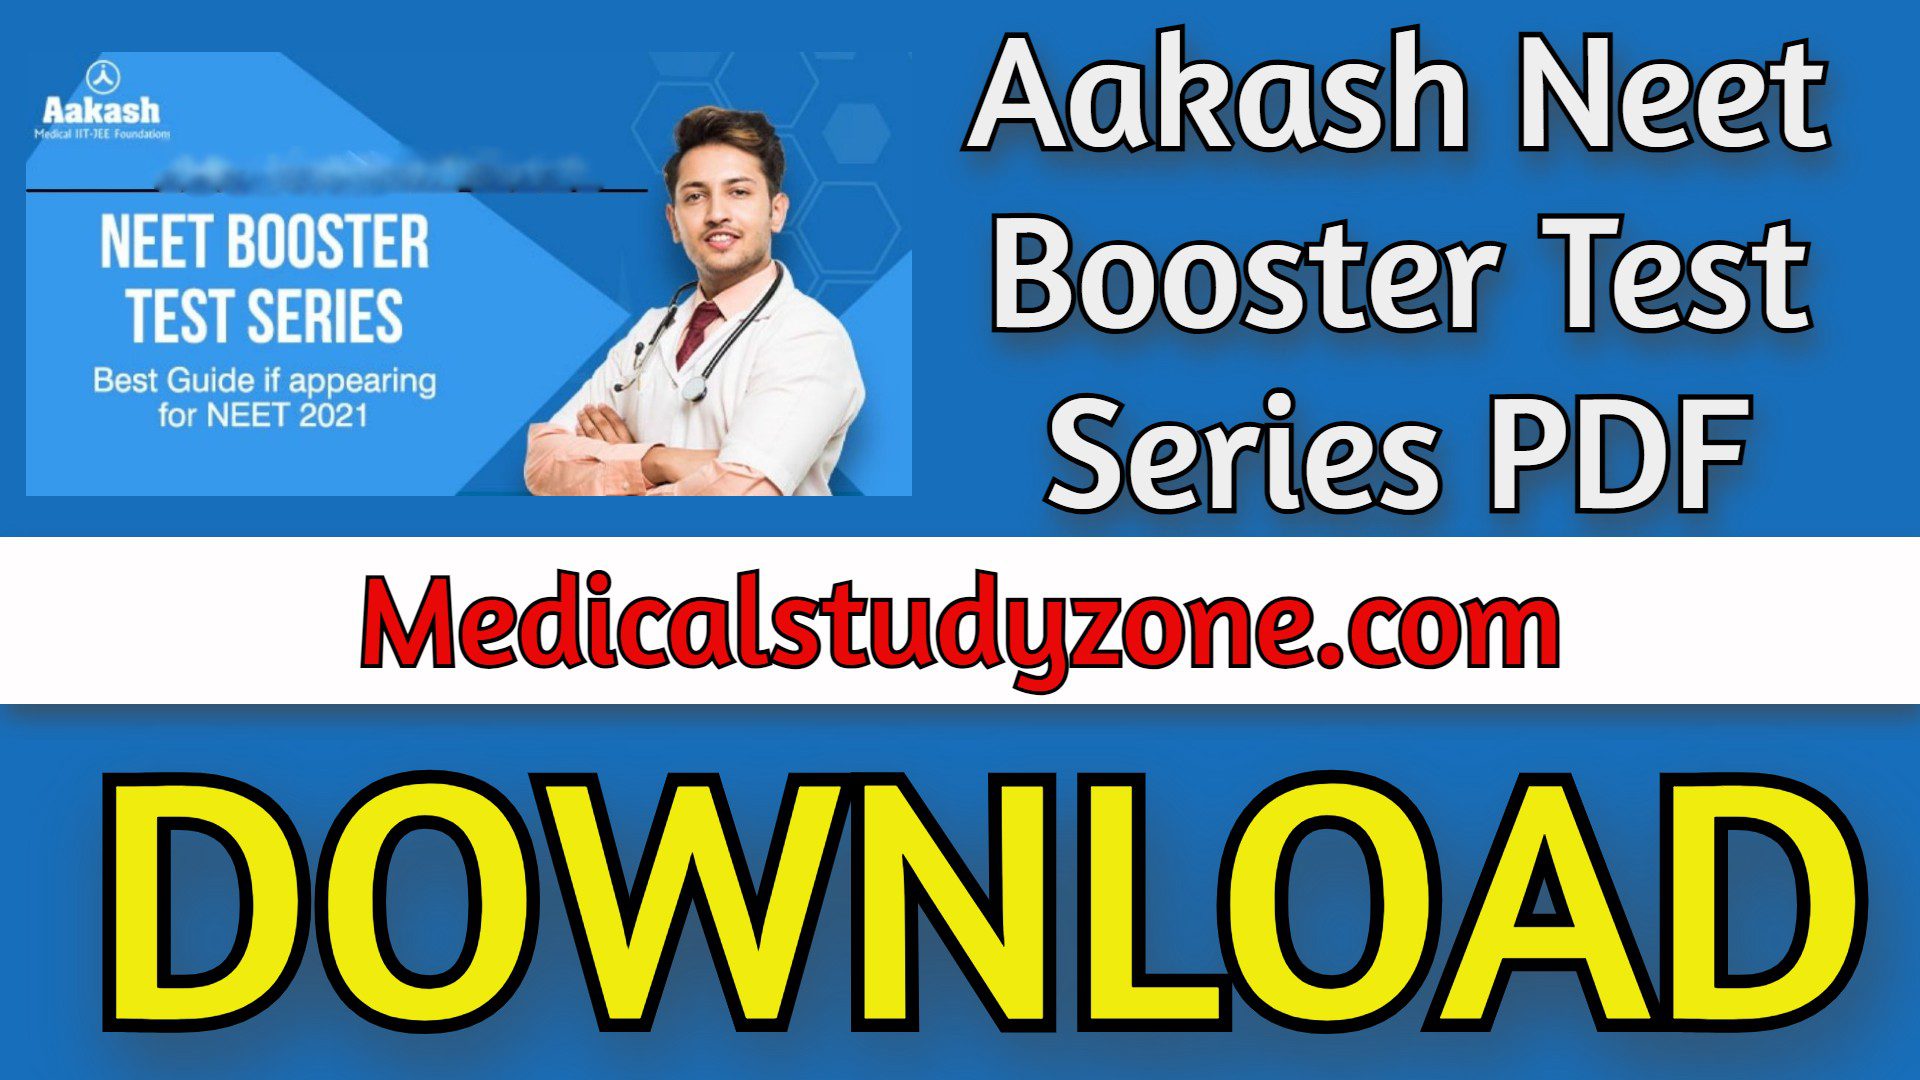 Aakash Neet Booster Test Series PDF 2021 Free Download